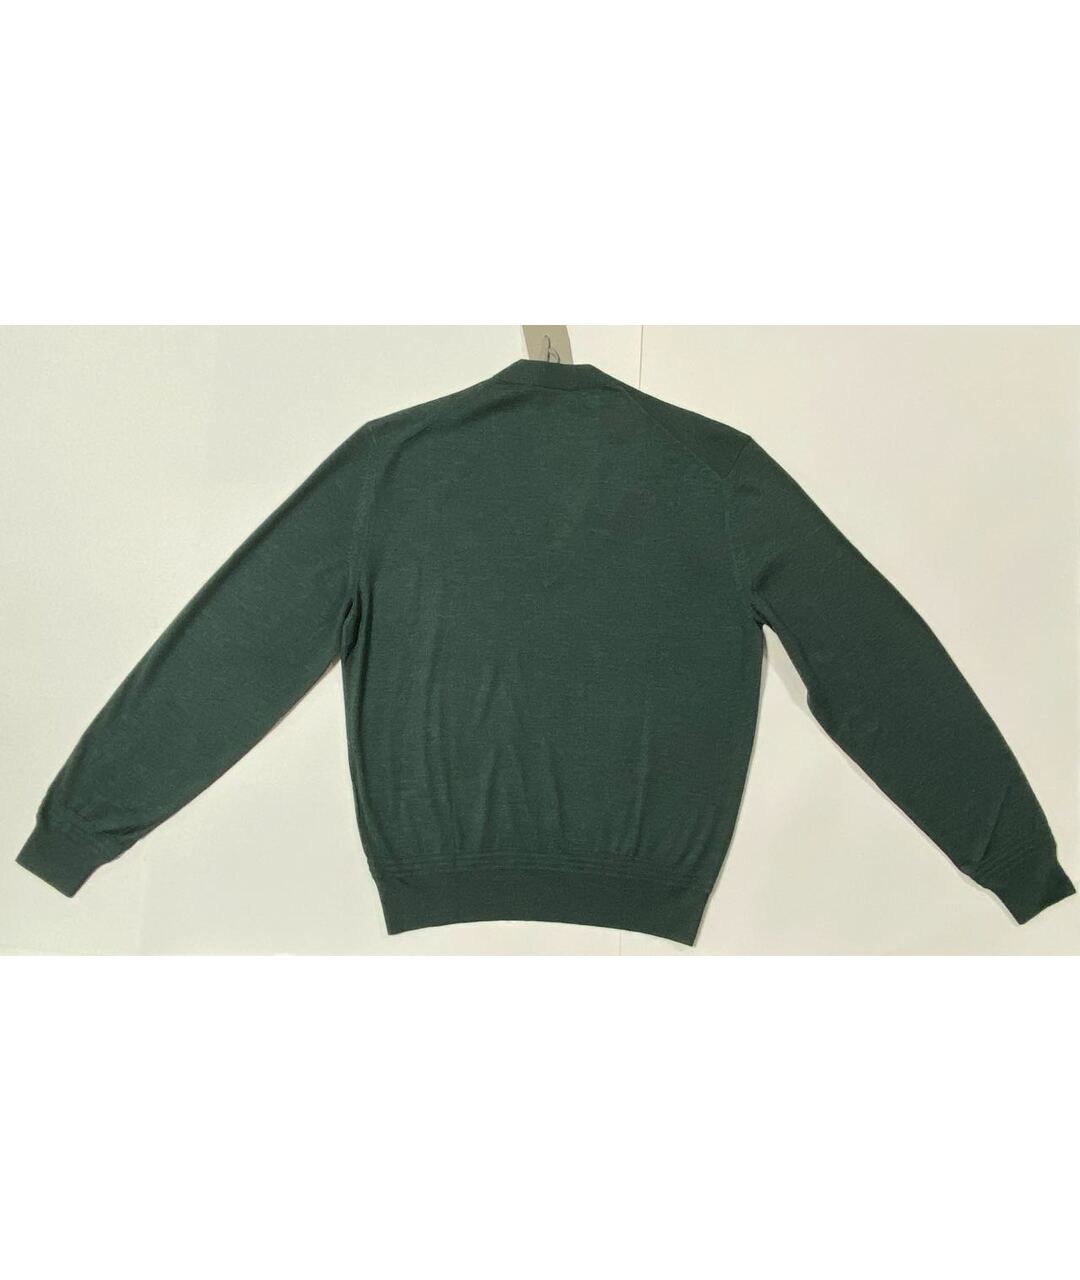 TOM FORD Зеленый кашемировый джемпер / свитер, фото 2